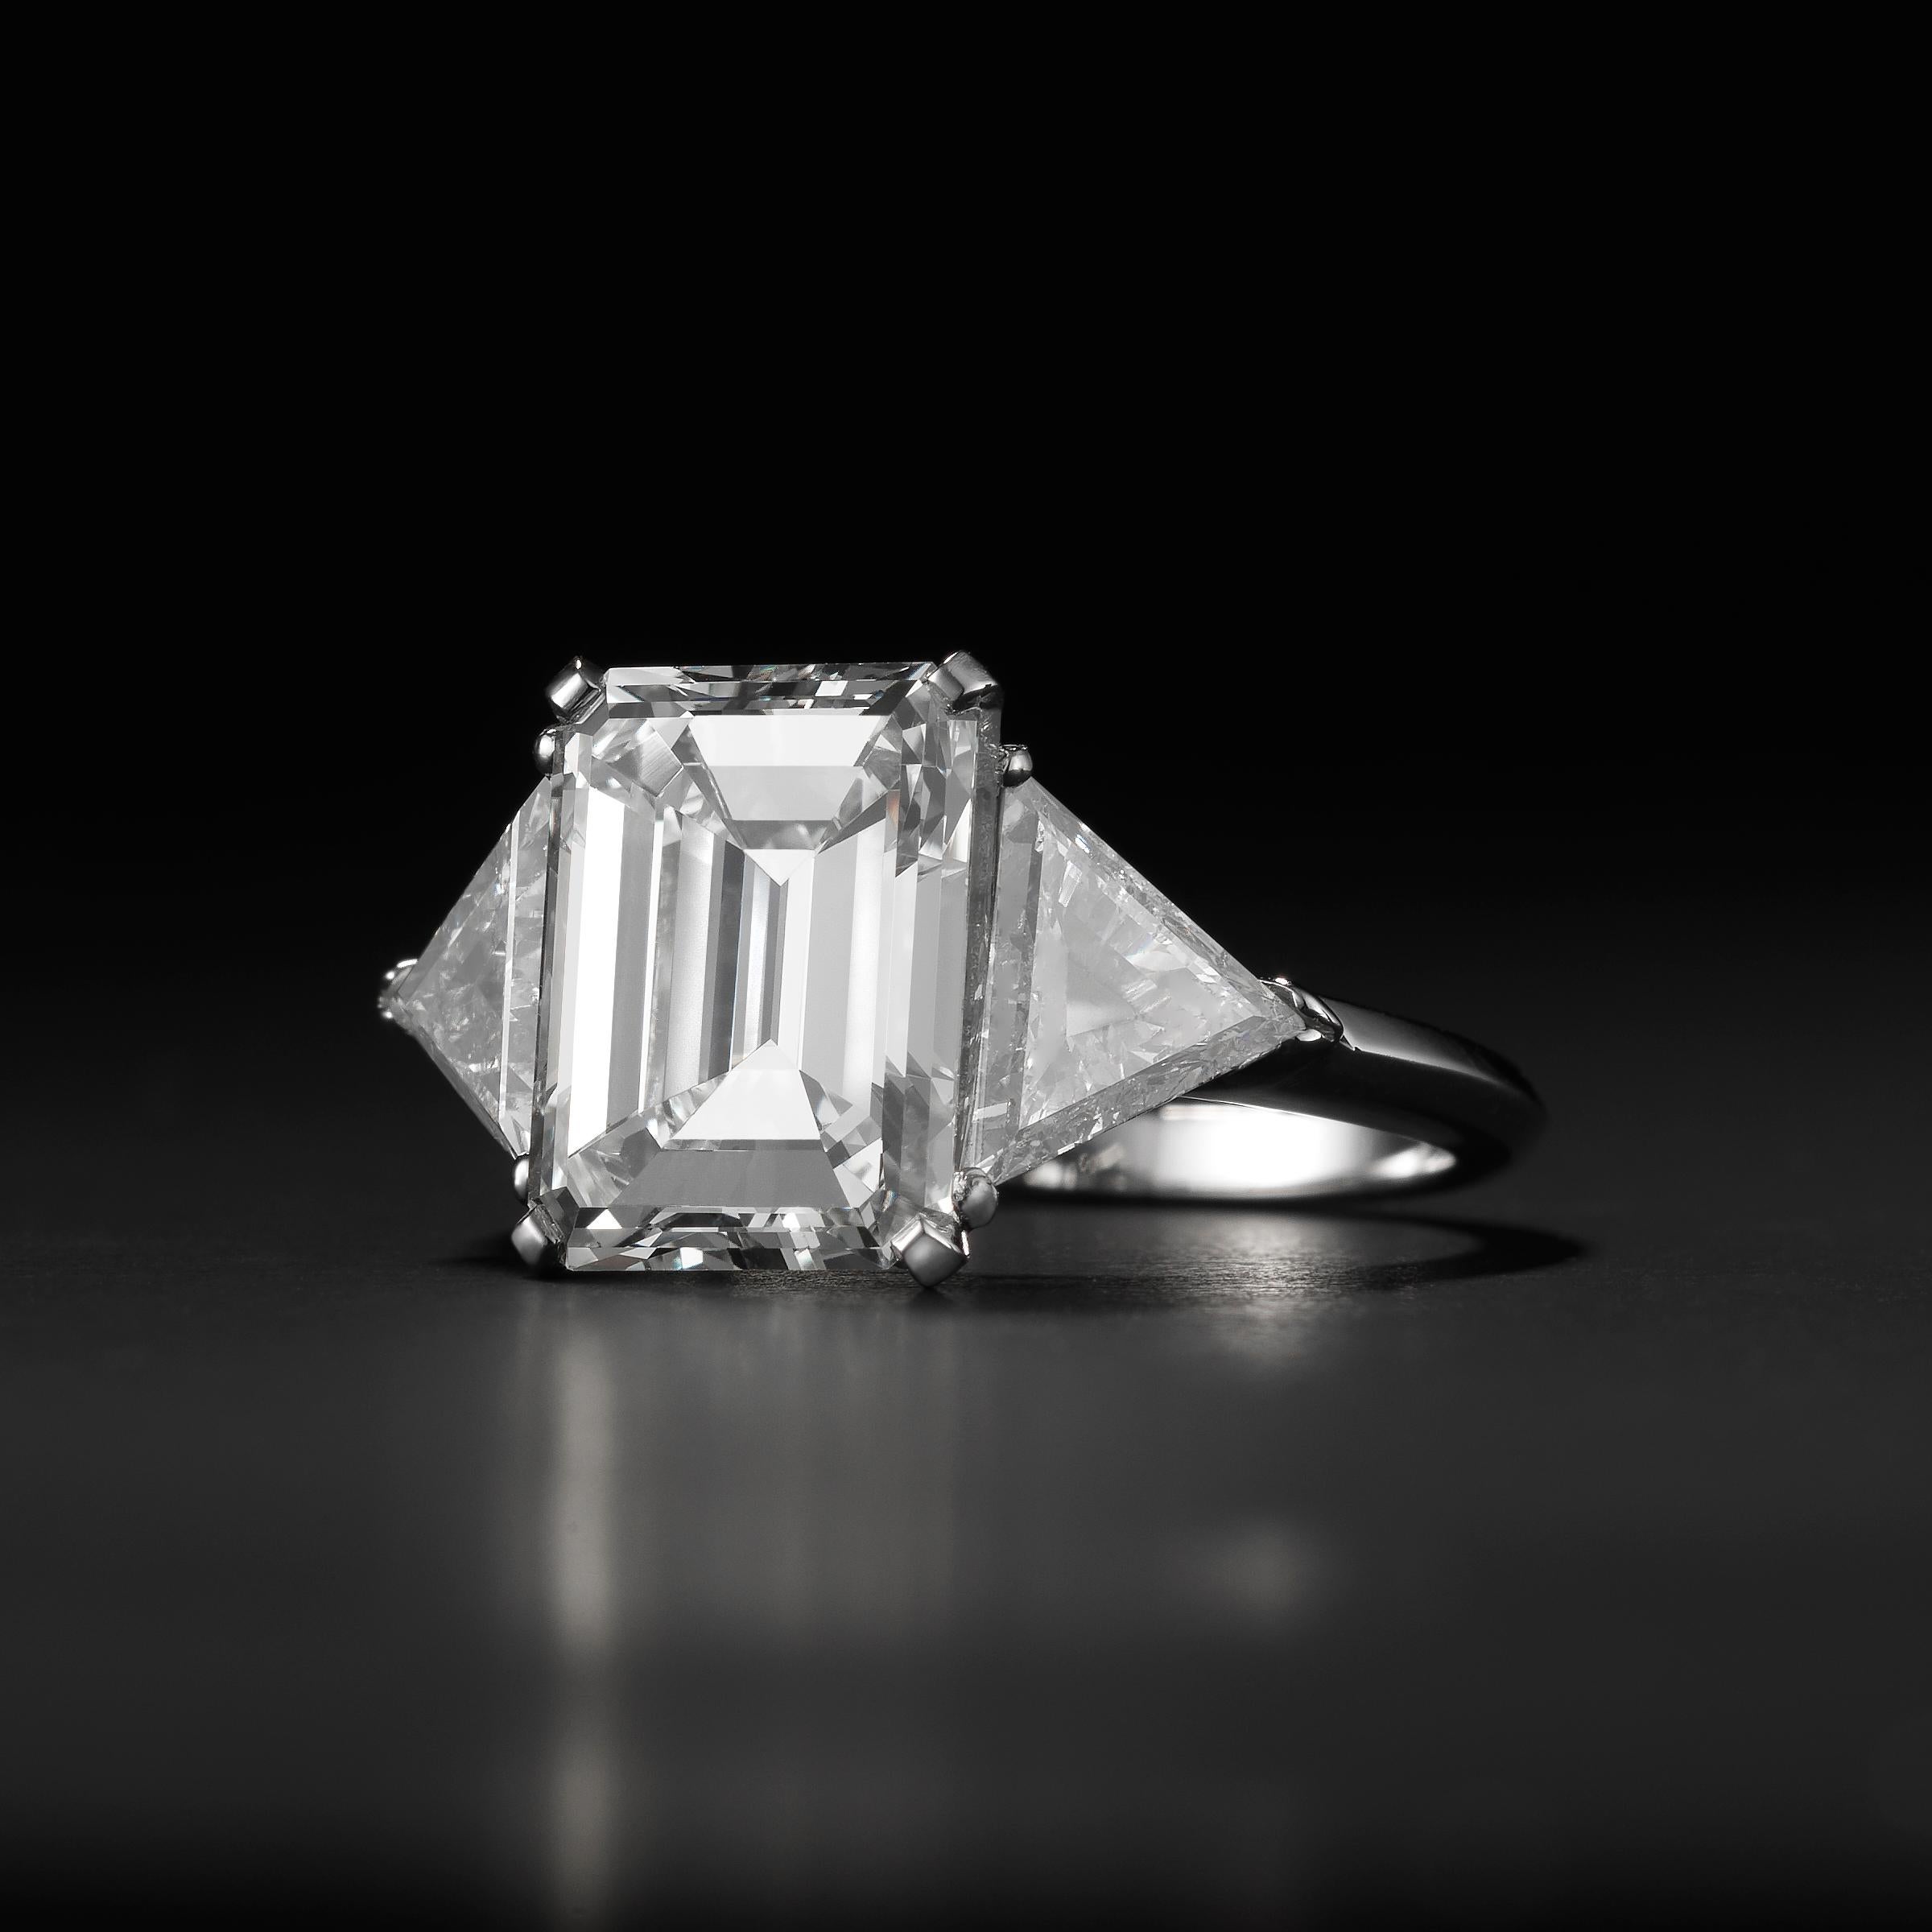 4.75 carat diamond price